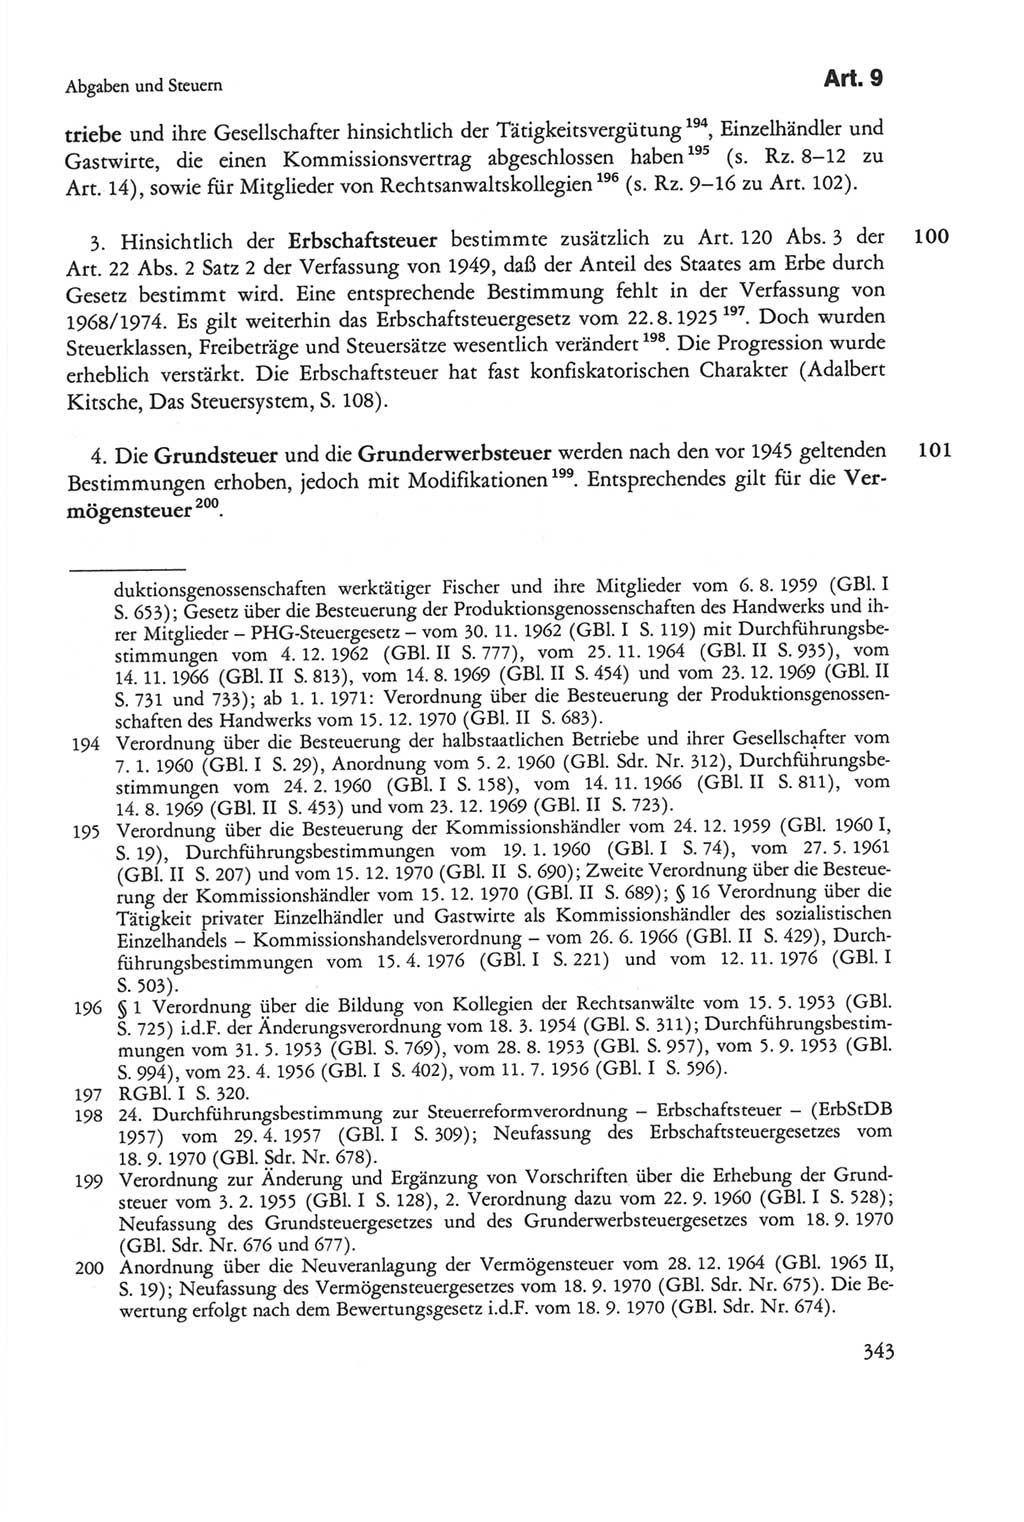 Die sozialistische Verfassung der Deutschen Demokratischen Republik (DDR), Kommentar mit einem Nachtrag 1997, Seite 343 (Soz. Verf. DDR Komm. Nachtr. 1997, S. 343)